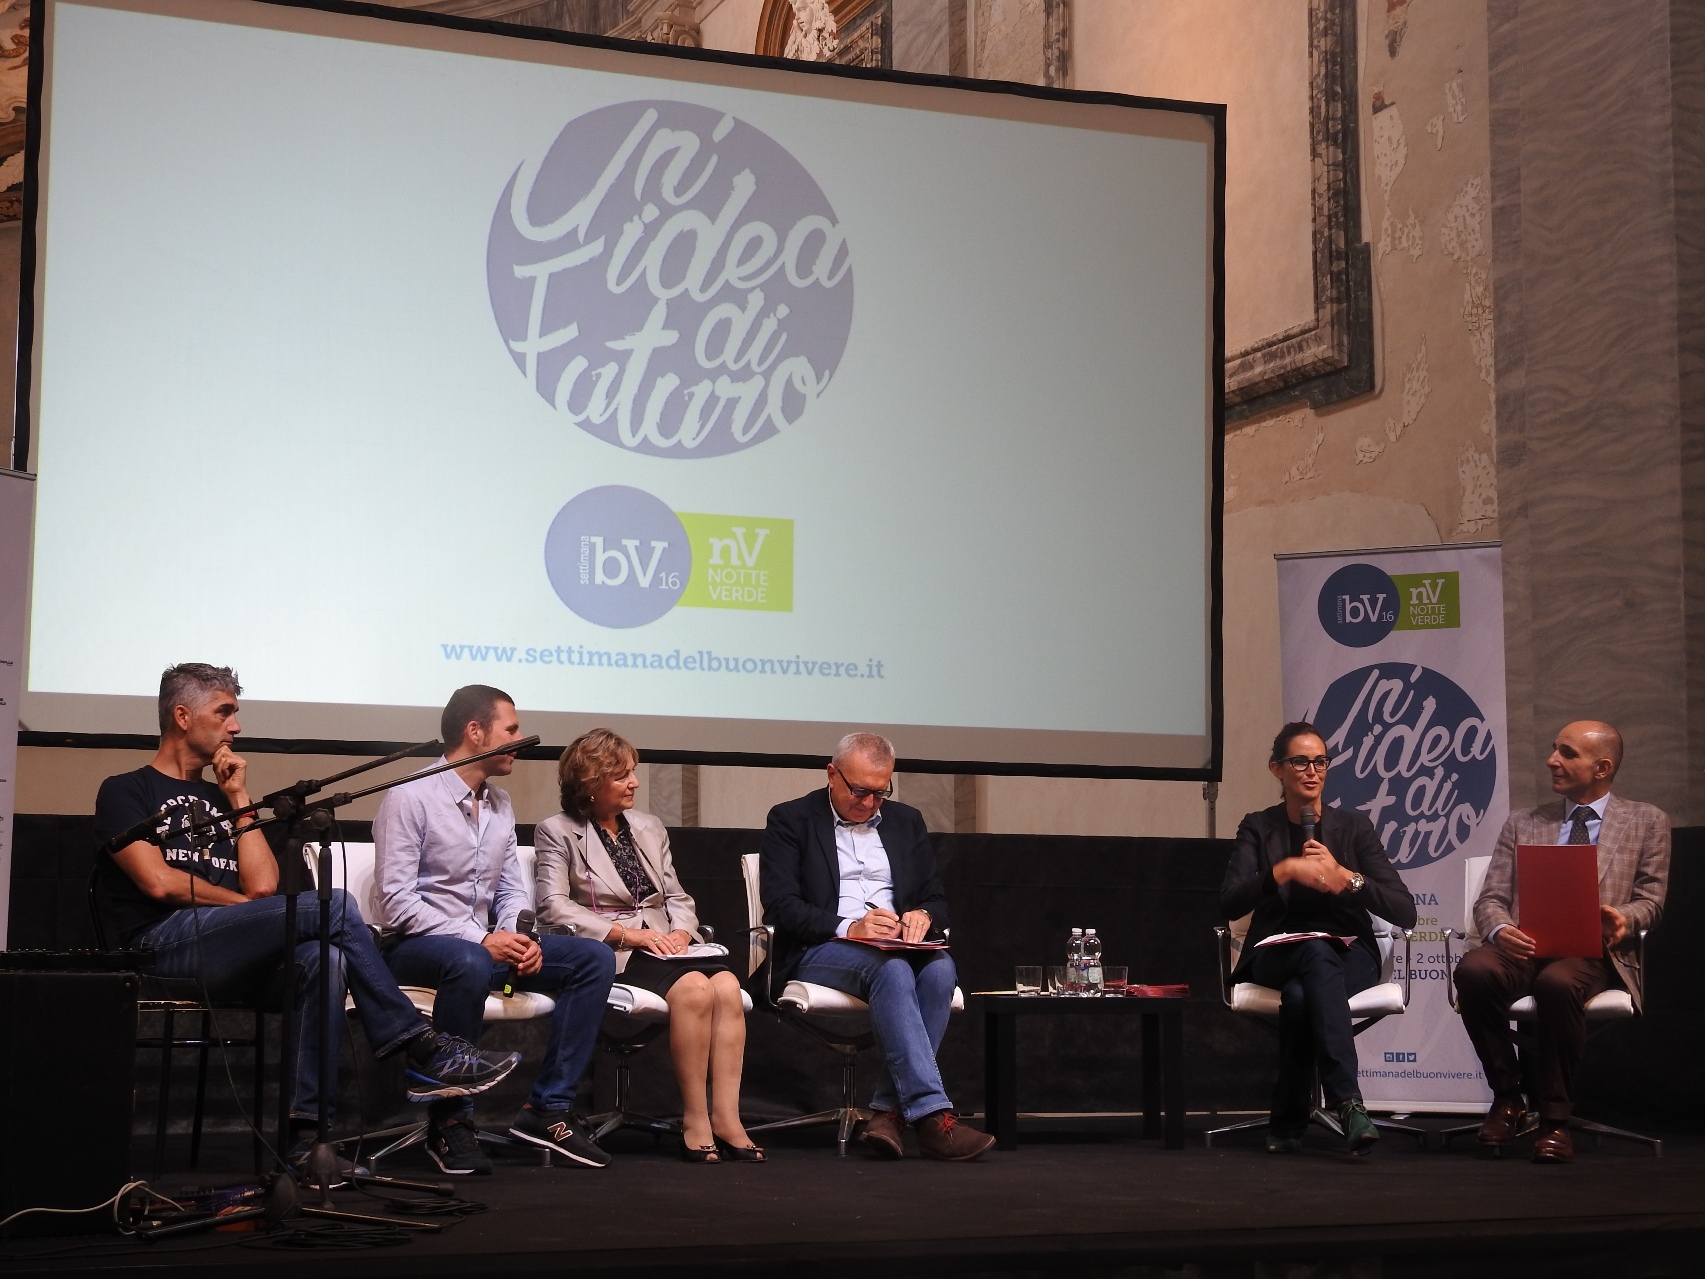 Fondazione IRET ONLUS partecipa ad incontro sull’Alzheimer nel corso della Settimana del Buon Vivere a Forlì